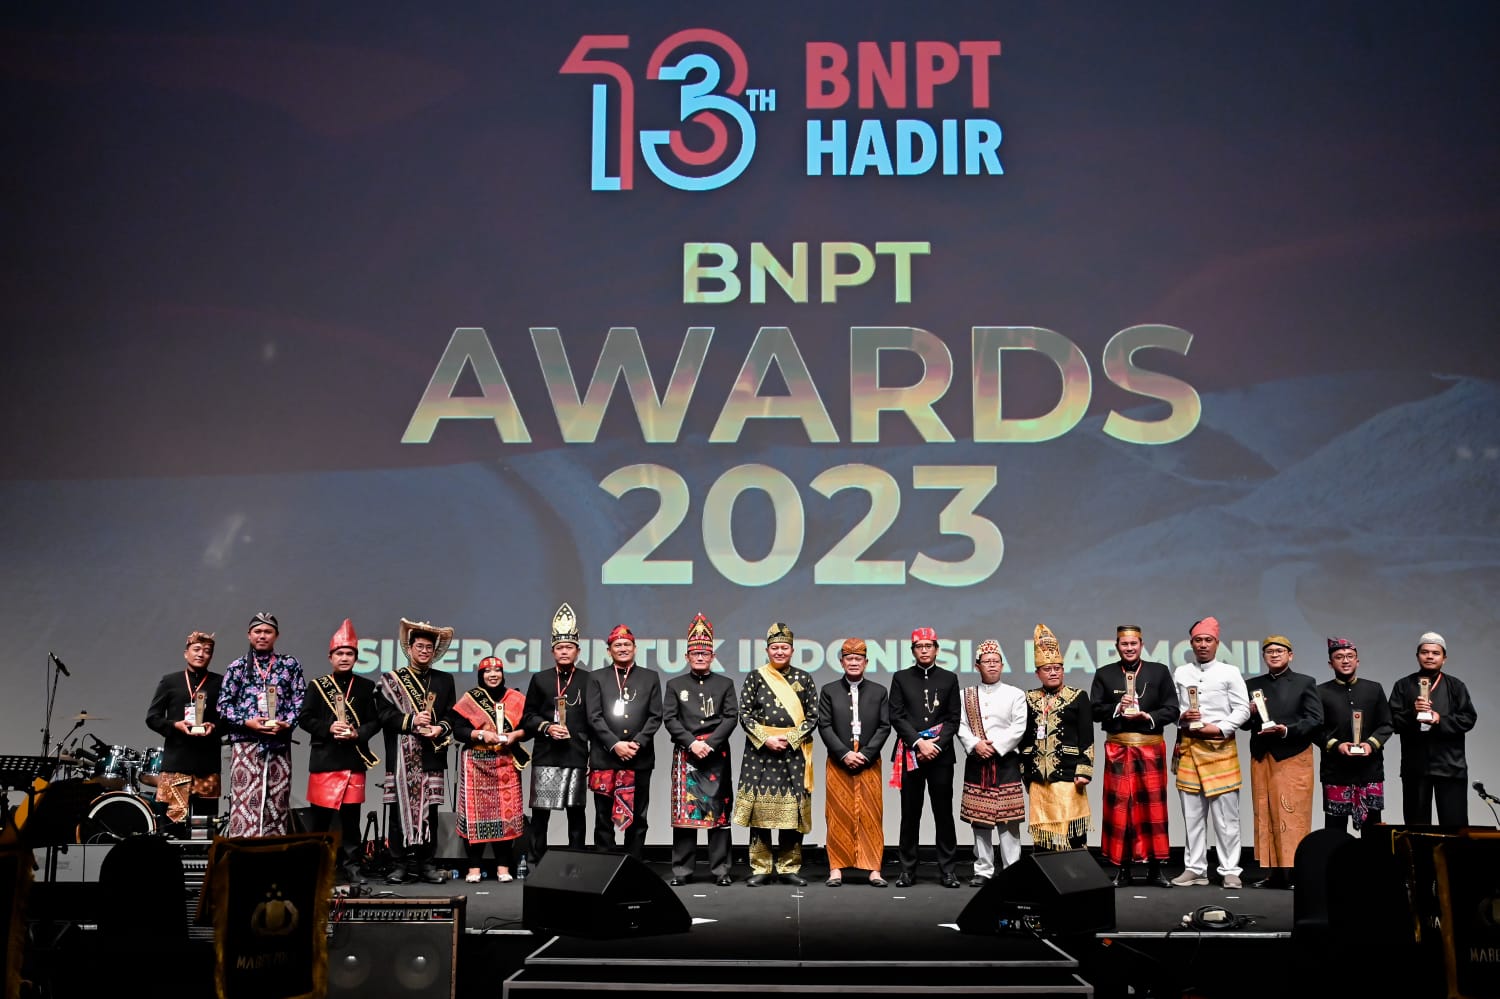 Pendamping 50 Napiter, Bambang Sugianto Dapat Penghargaan BNPT